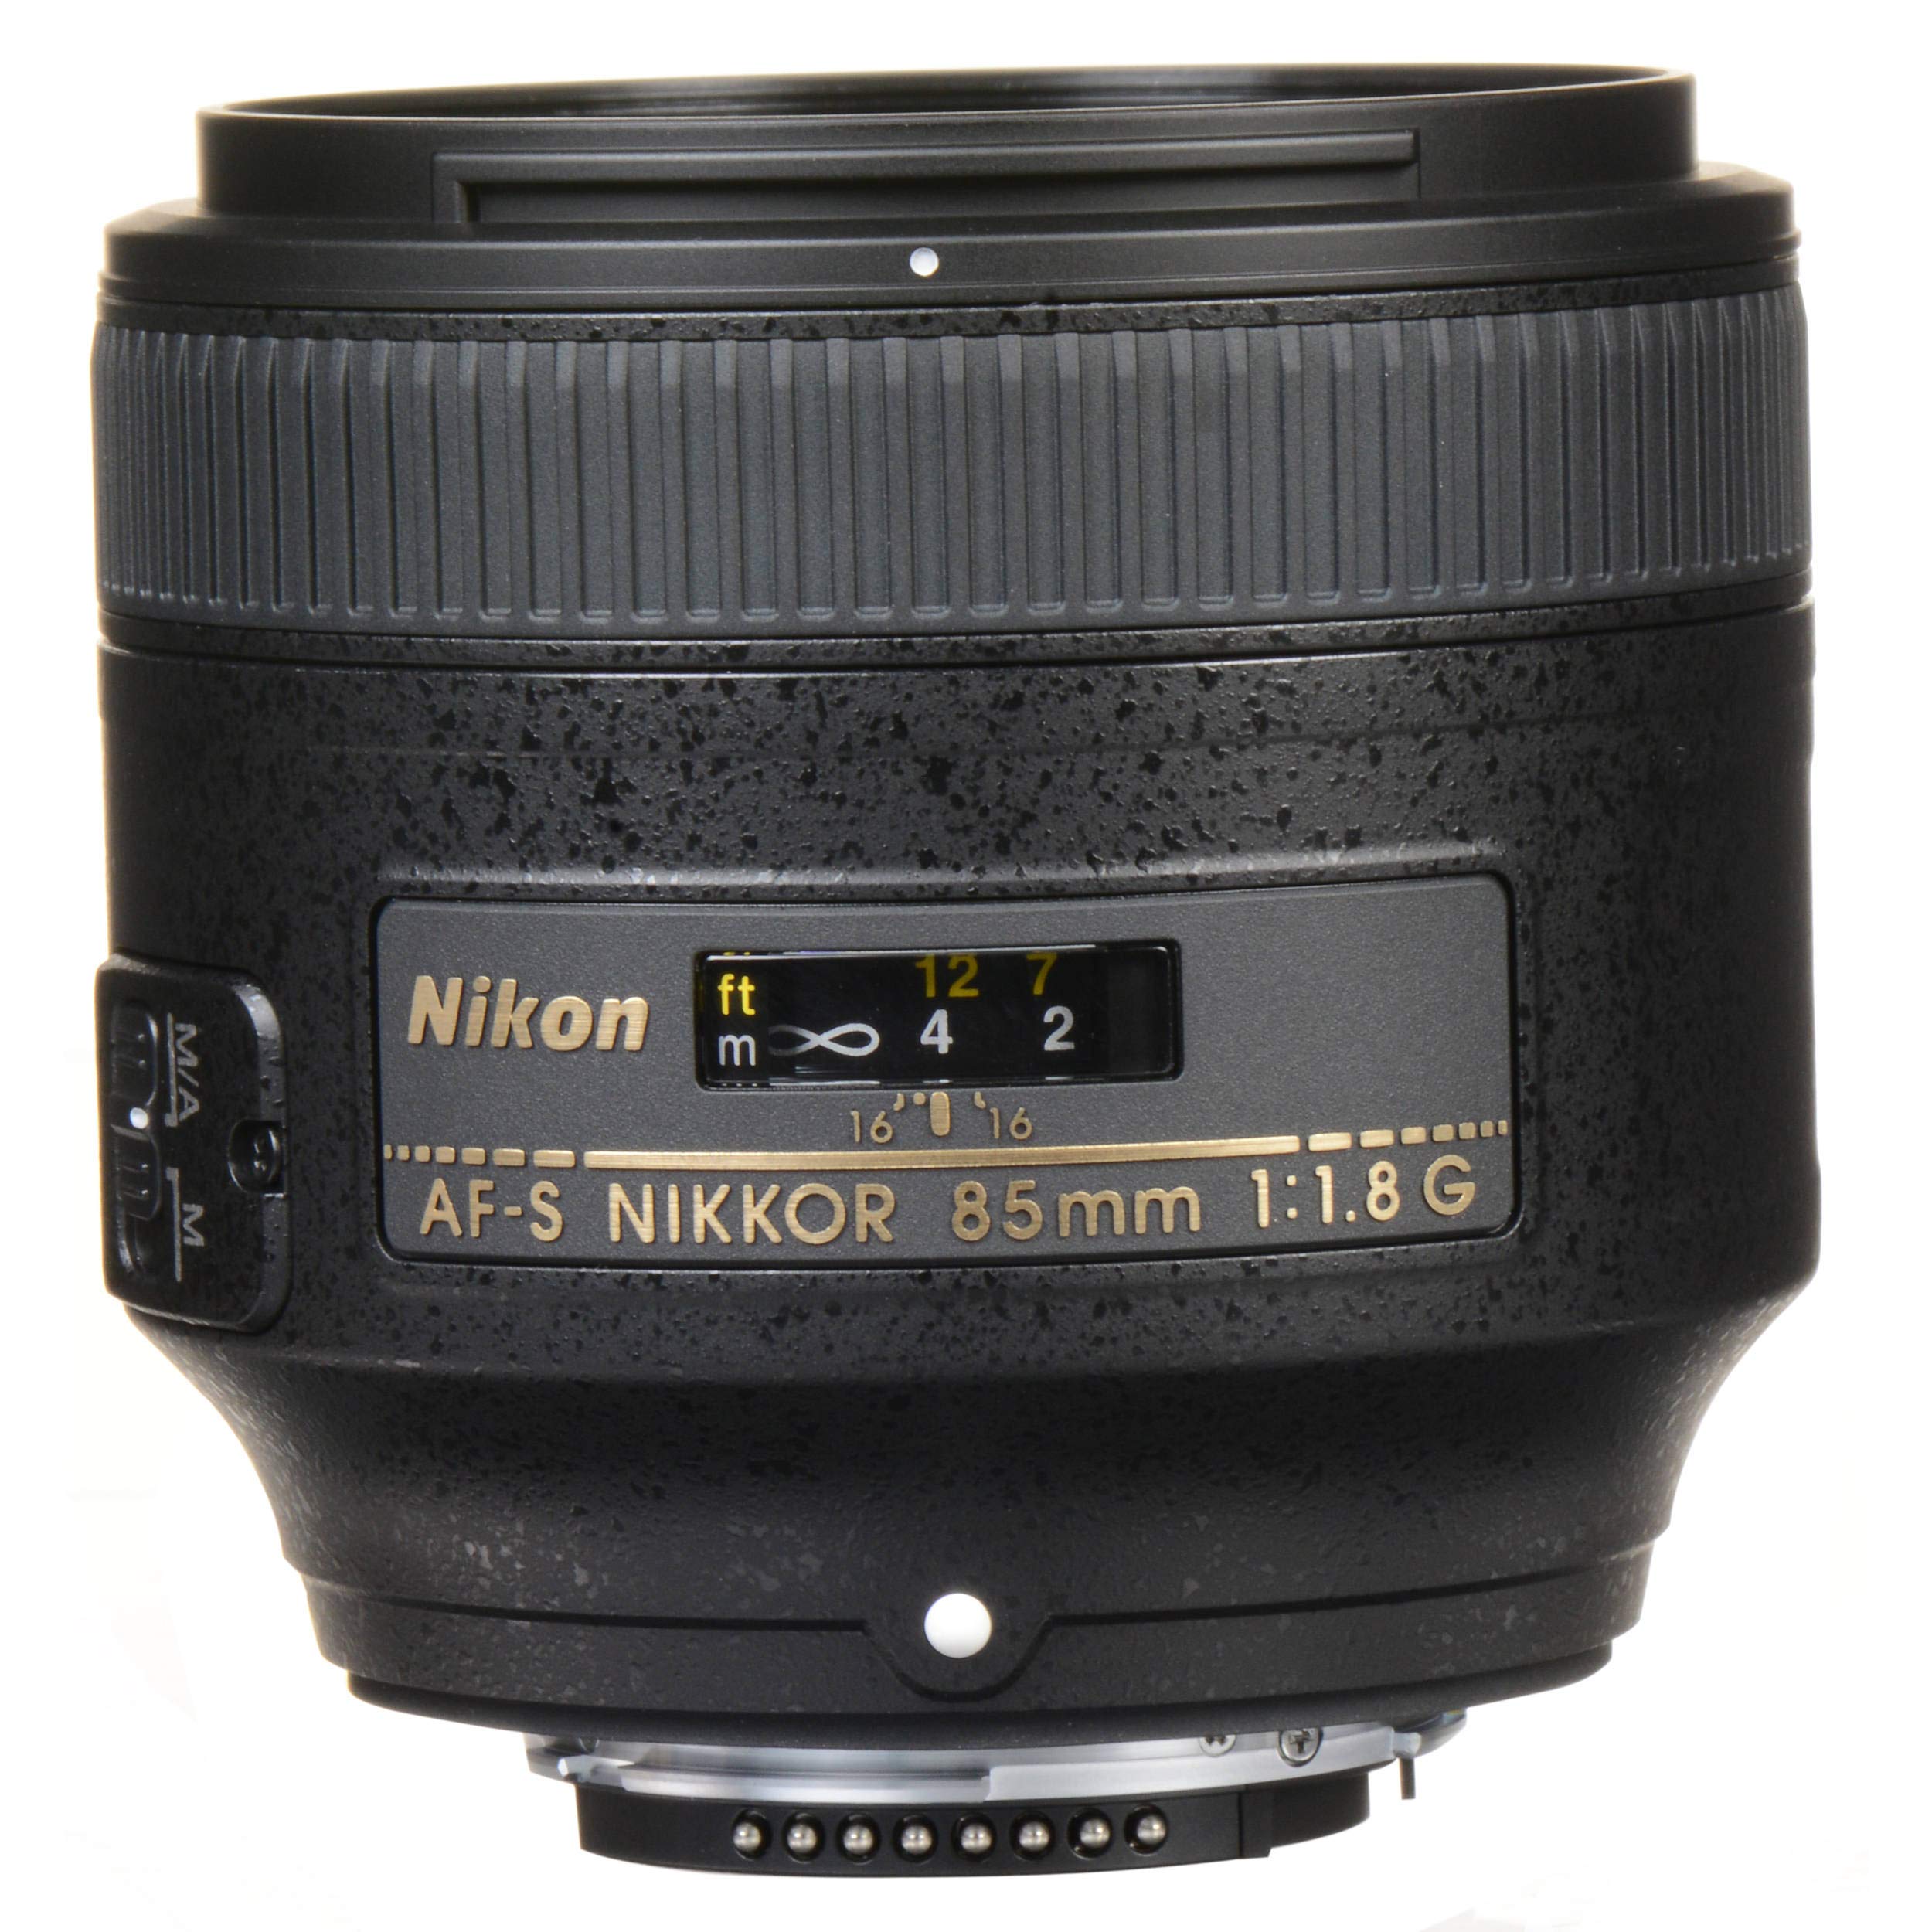 Nikon 85MM f.1.8G AF-S Lens (Intl Model) + 4.5 inch Vivitar Premium Lens Case + Vivitar Graduated Color Filter Set + 3pcs UV Lens Filter Kit + Cleaning Kit